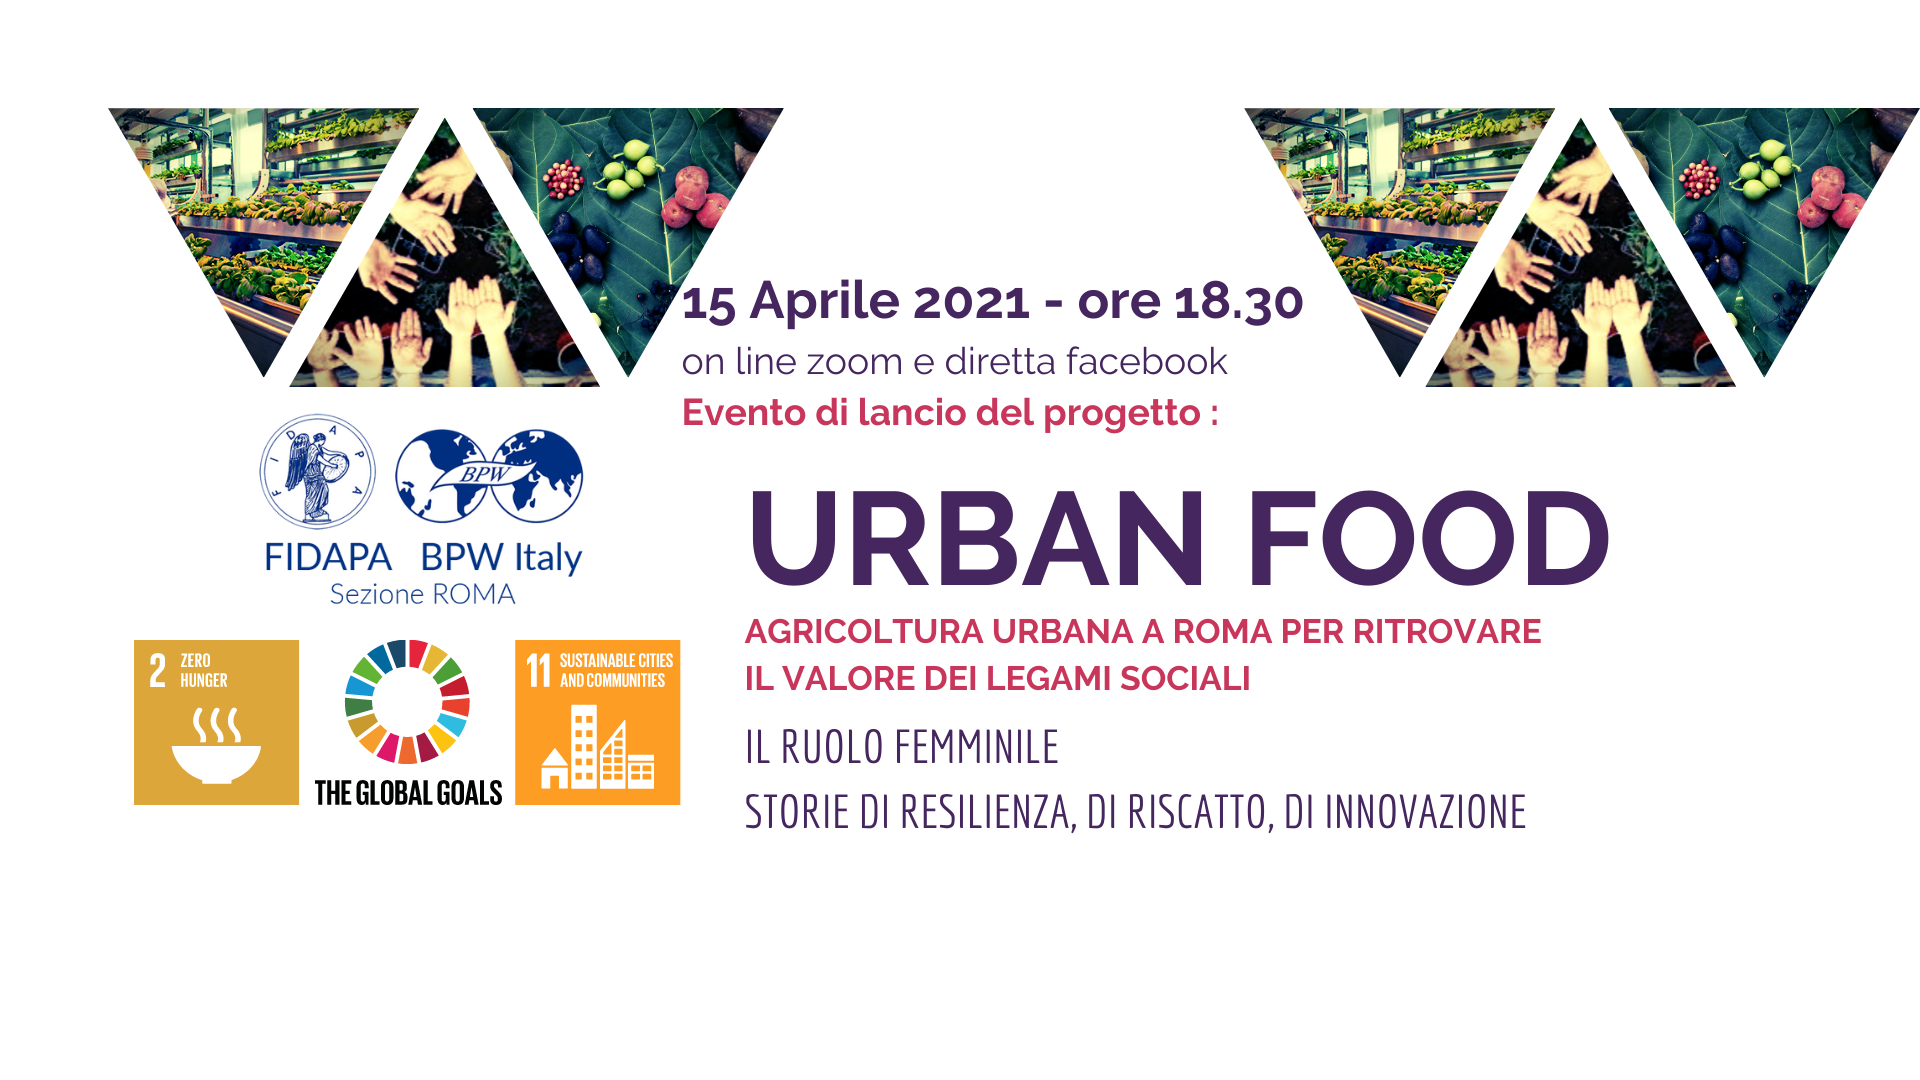 URBAN FOOD Agricoltura urbana a Roma per ritrovare il valore dei legami sociali